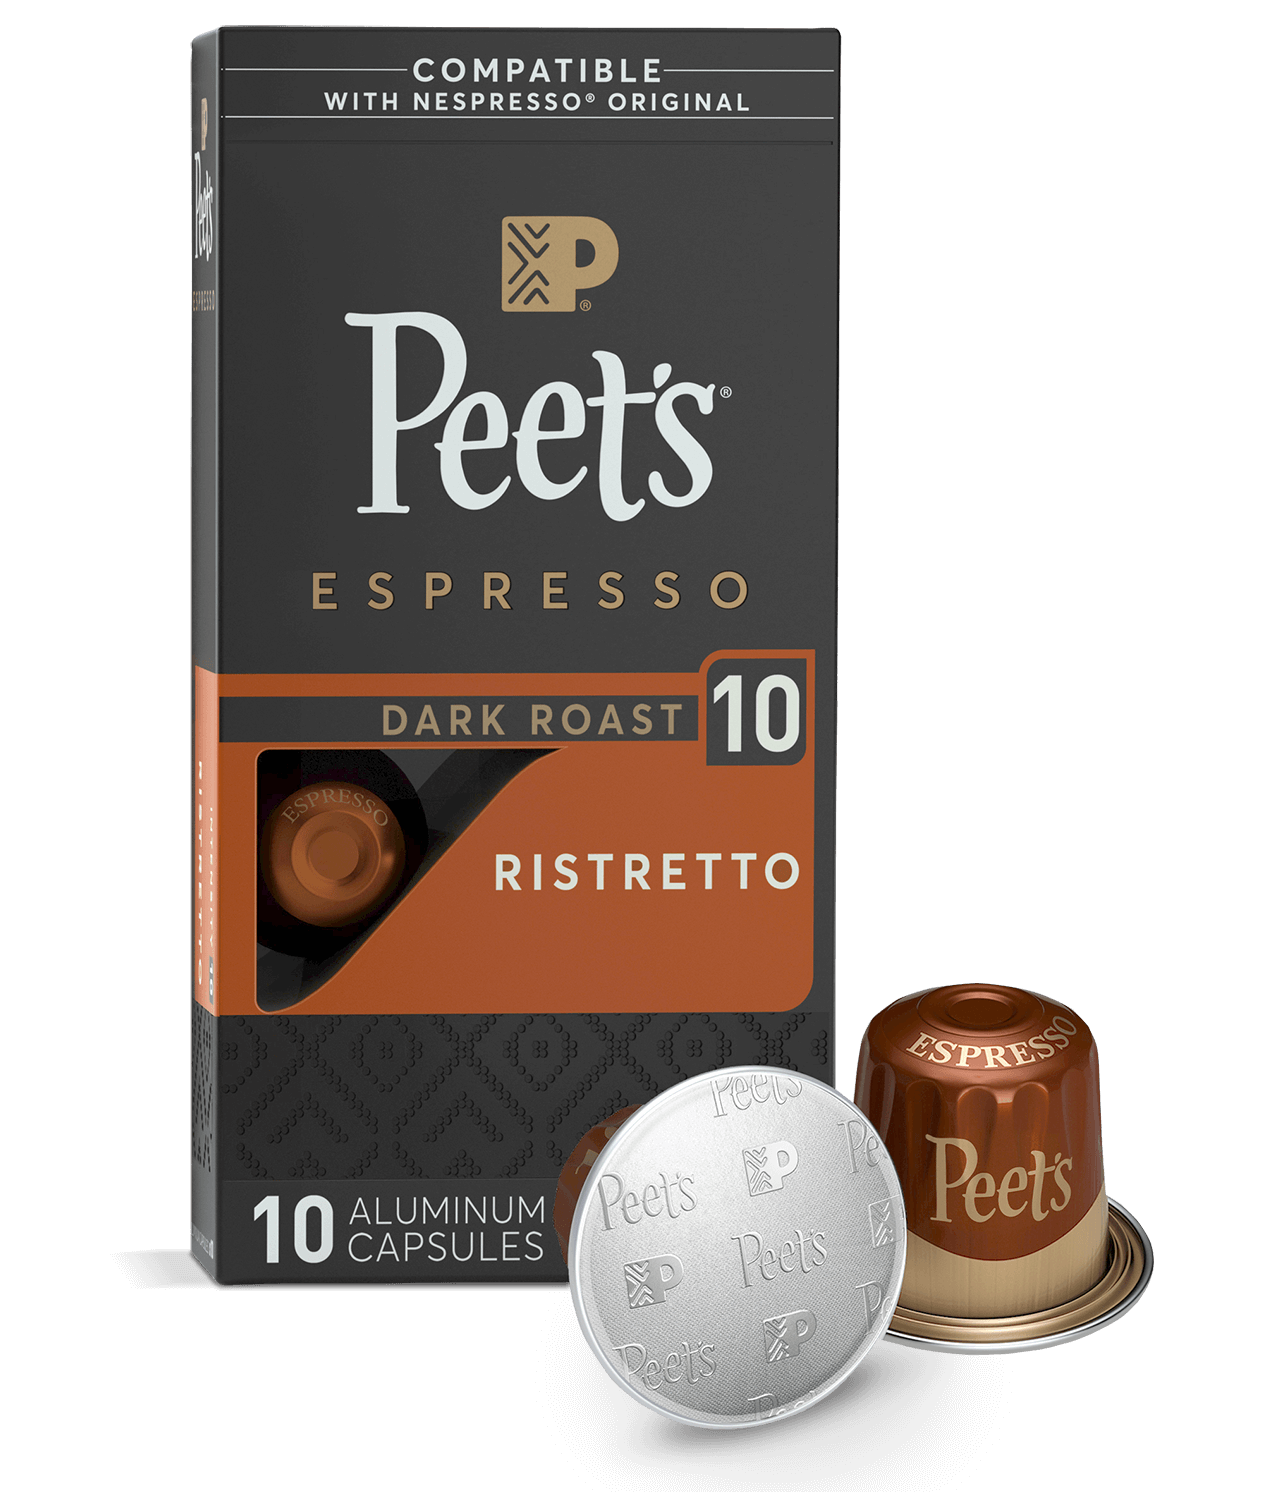 L'or Espresso Ristretto Coffee Capsules 40 Pack